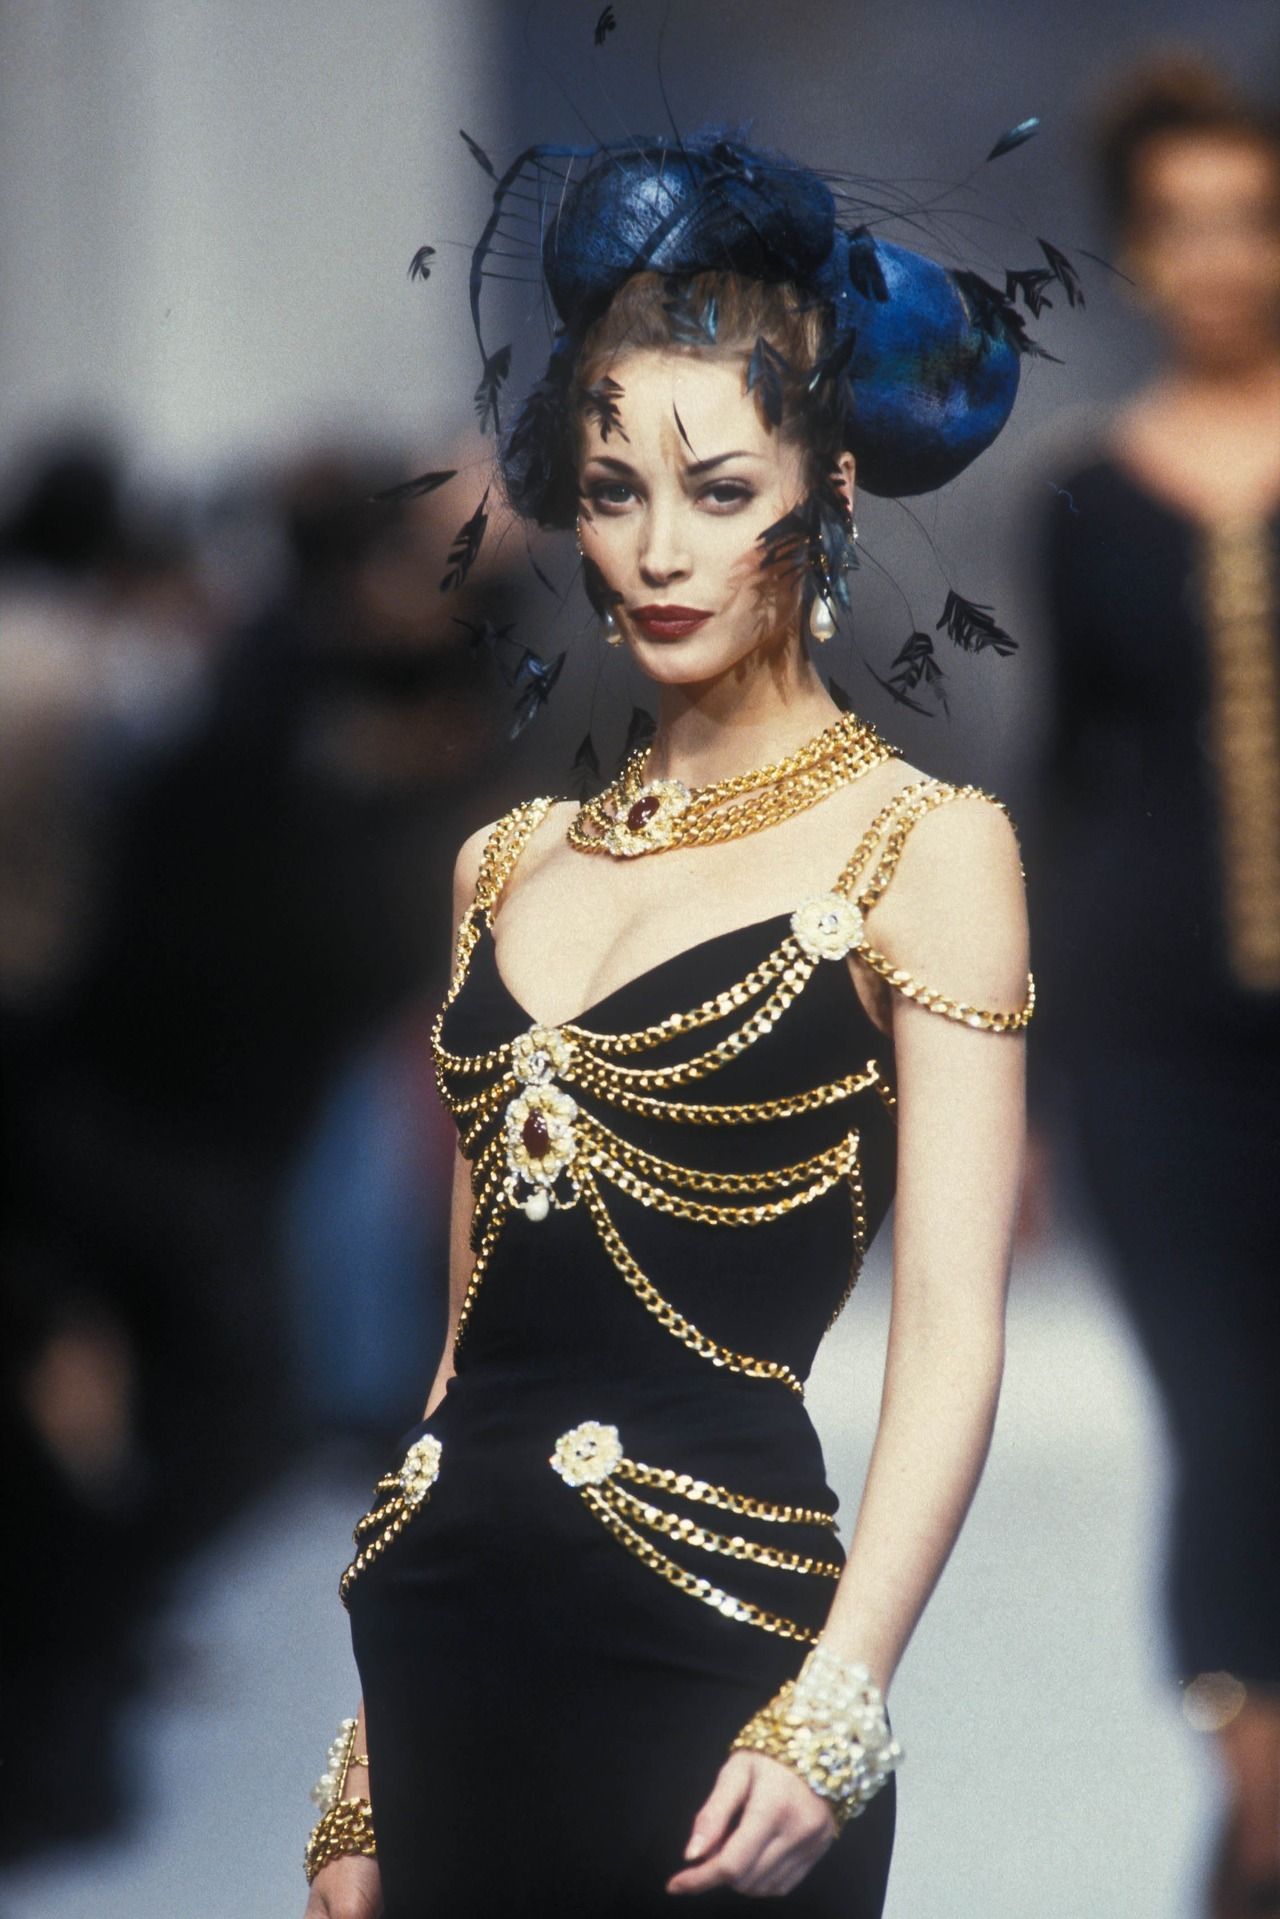 Chiếc đầm đen thuộc BST Chanel Haute Couture 1992 từng được Christy Turlington trình diễn trên sàn catwalk vốn nổi tiếng là huyền thoại làm nức lòng người hâm mộ.